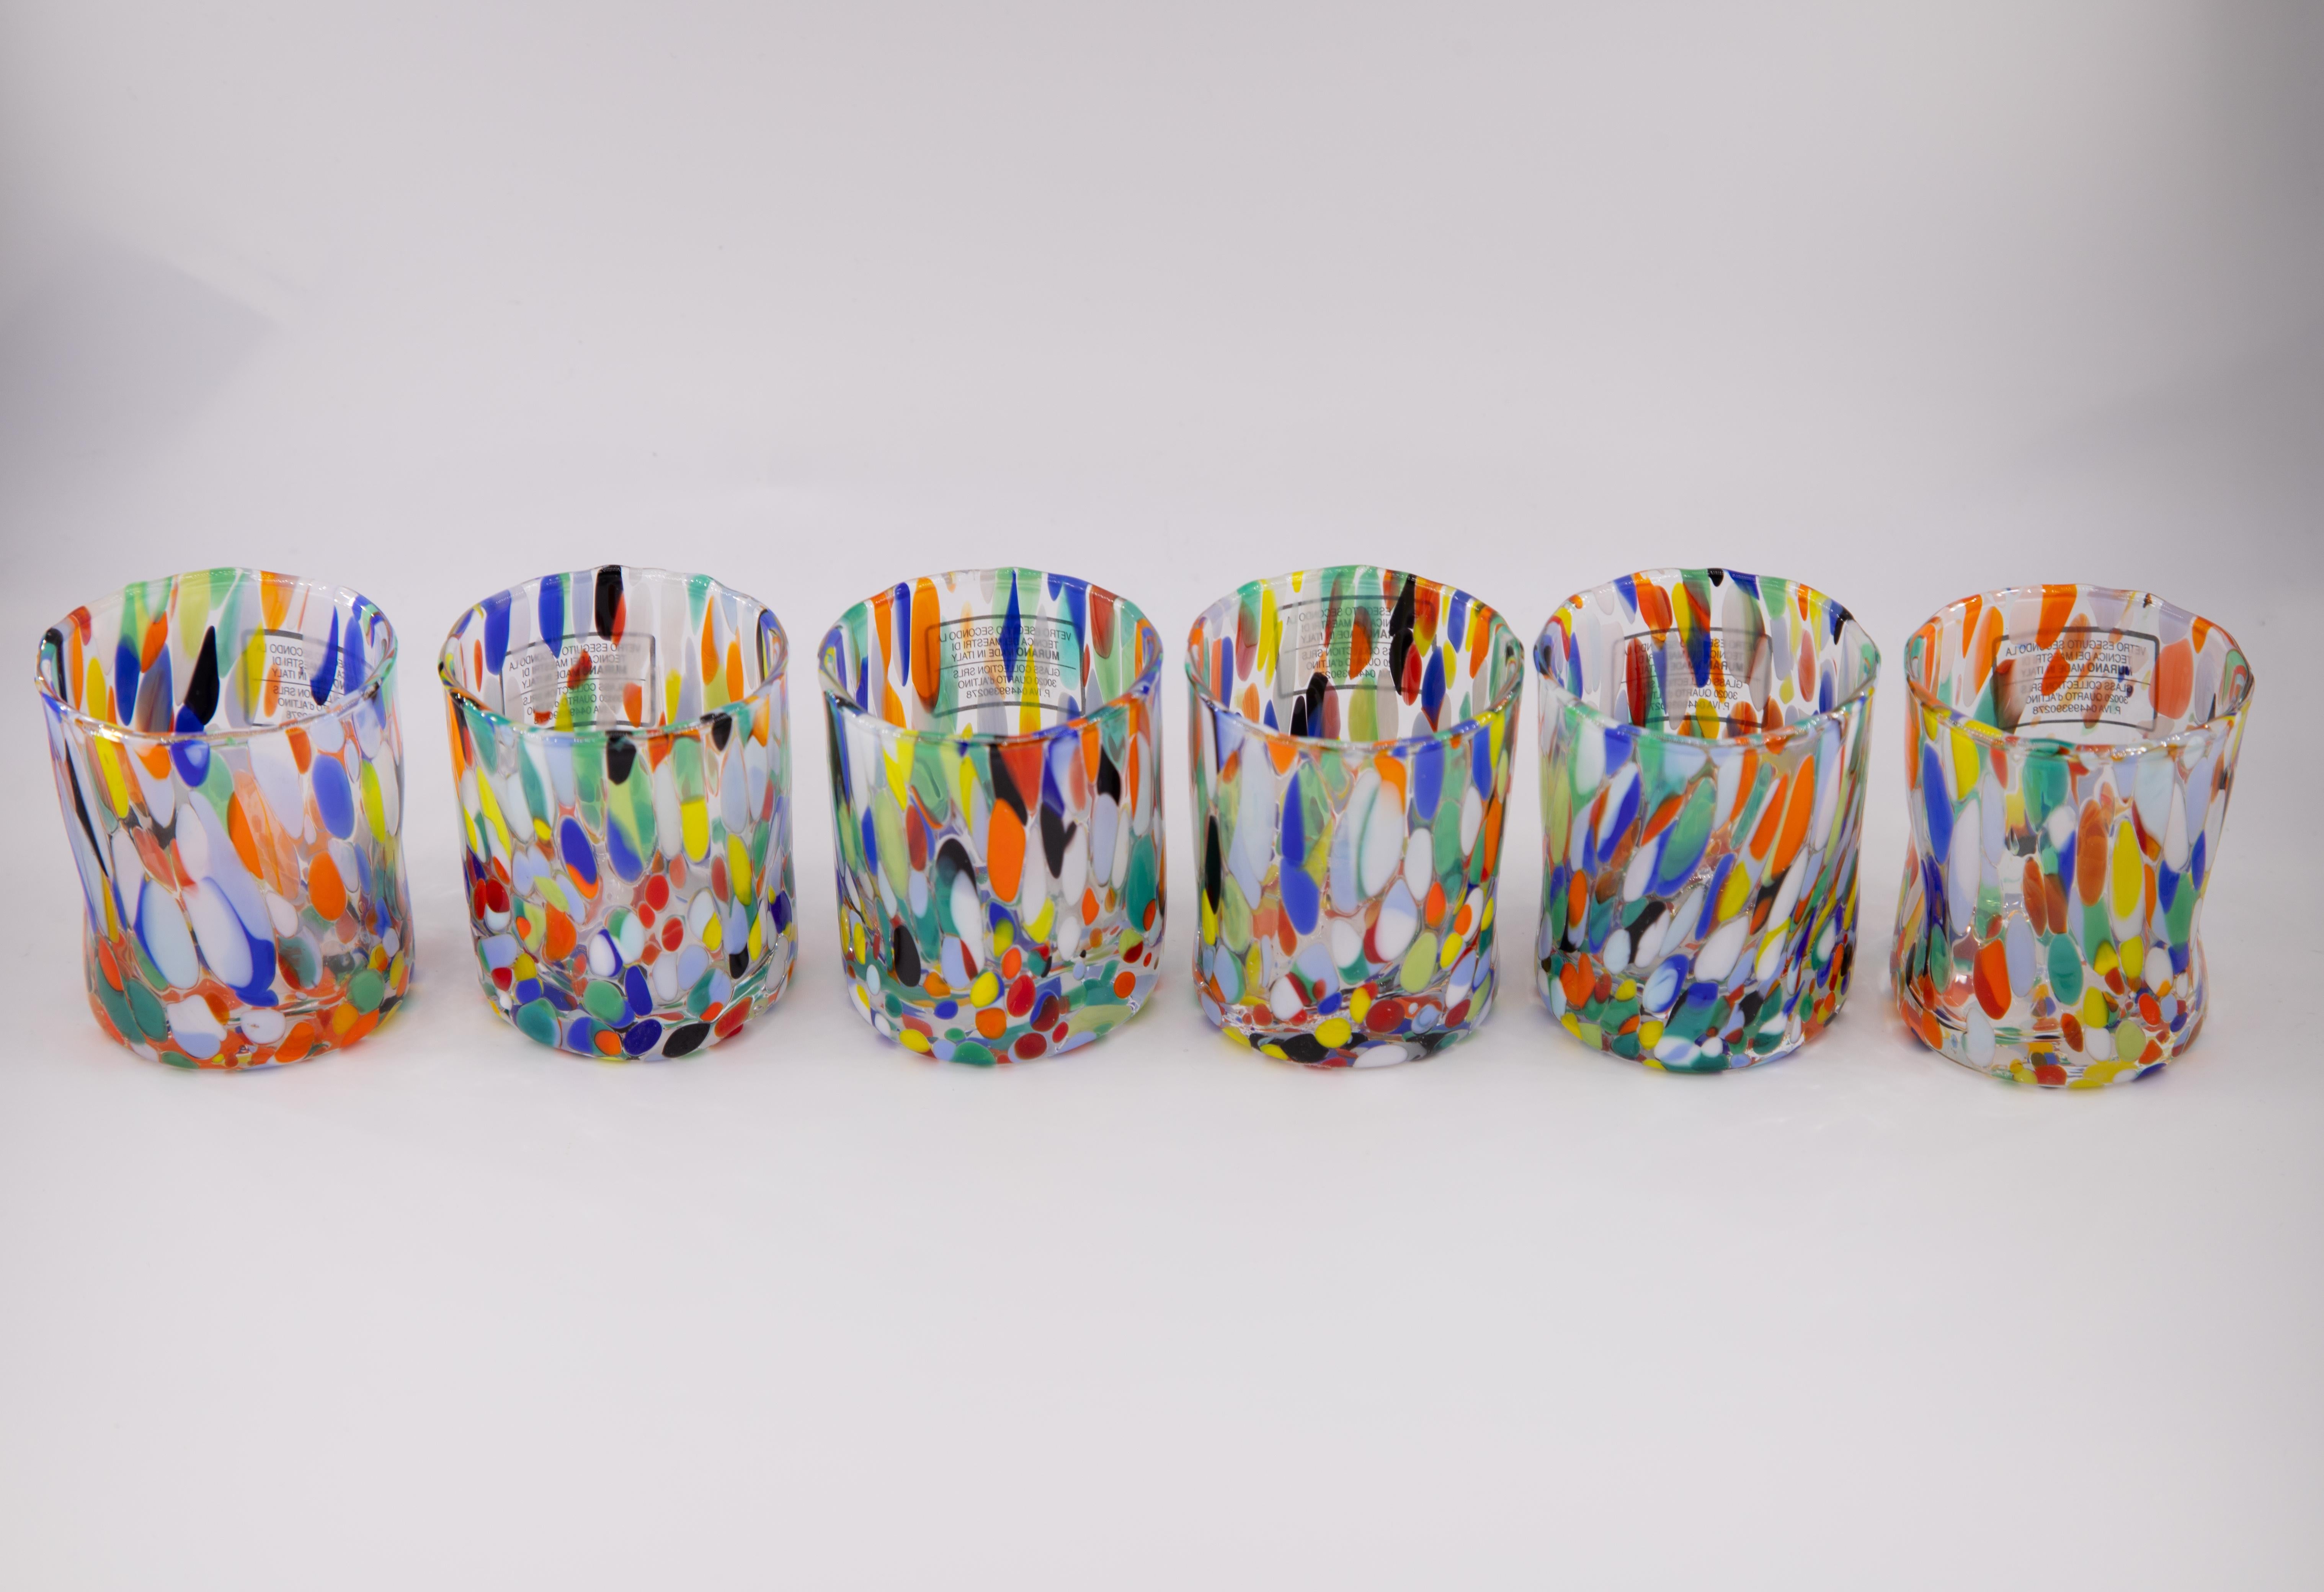 Satz von sechs Schnaps-/Kaffeegläsern Farbe Arlecchino - Murano Glas - Made in Italy.

Diese individuellen Murano-Gläser sind vom klassischen 